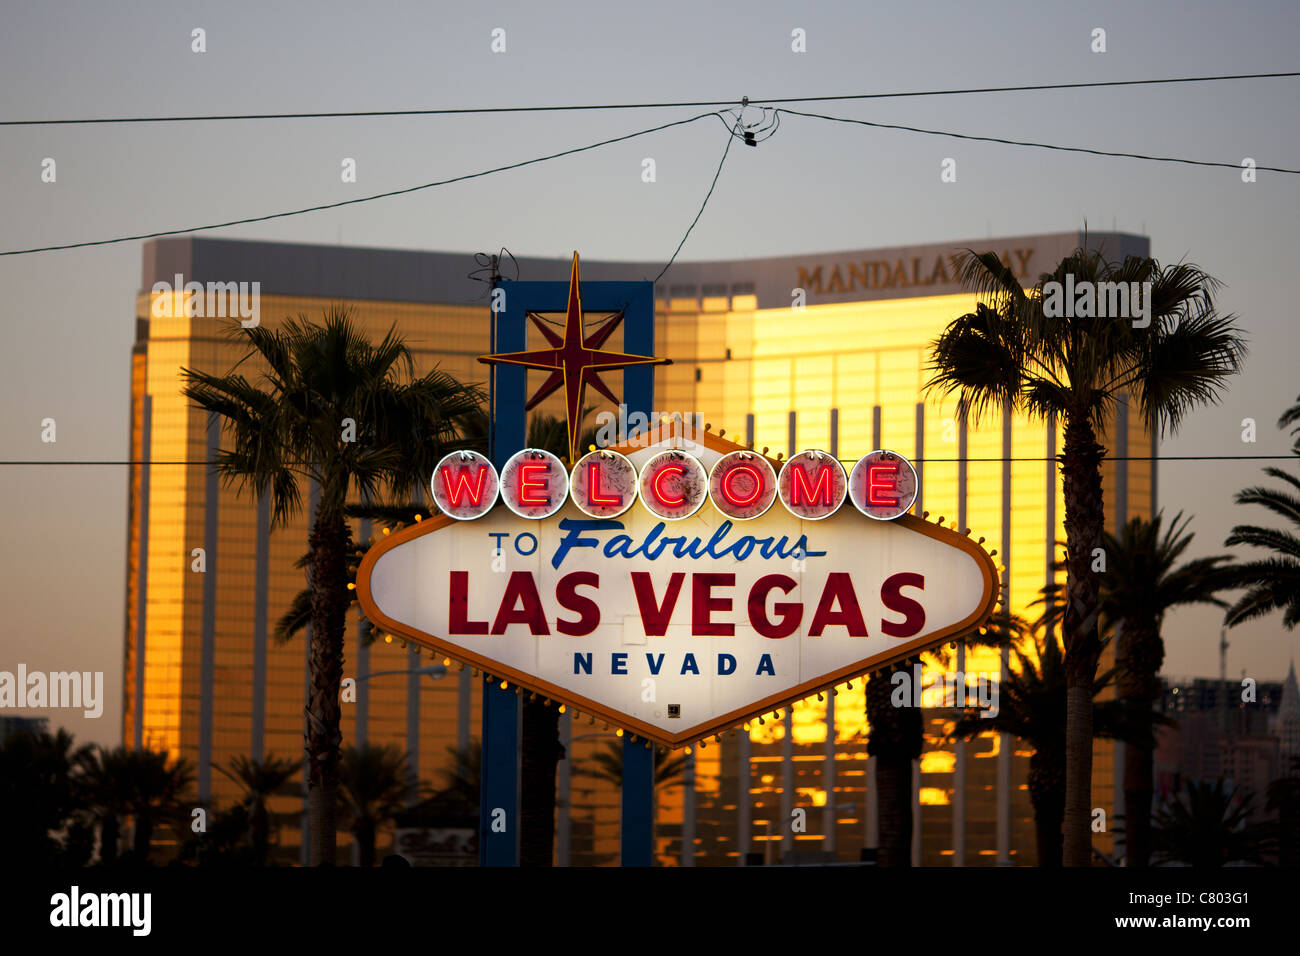 Bienvenue au fabuleux panneau de Las Vegas.Le Mandalay Bay Resort au coucher du soleil met en évidence le célèbre panneau.Clark County, Nevada, États-Unis. Banque D'Images